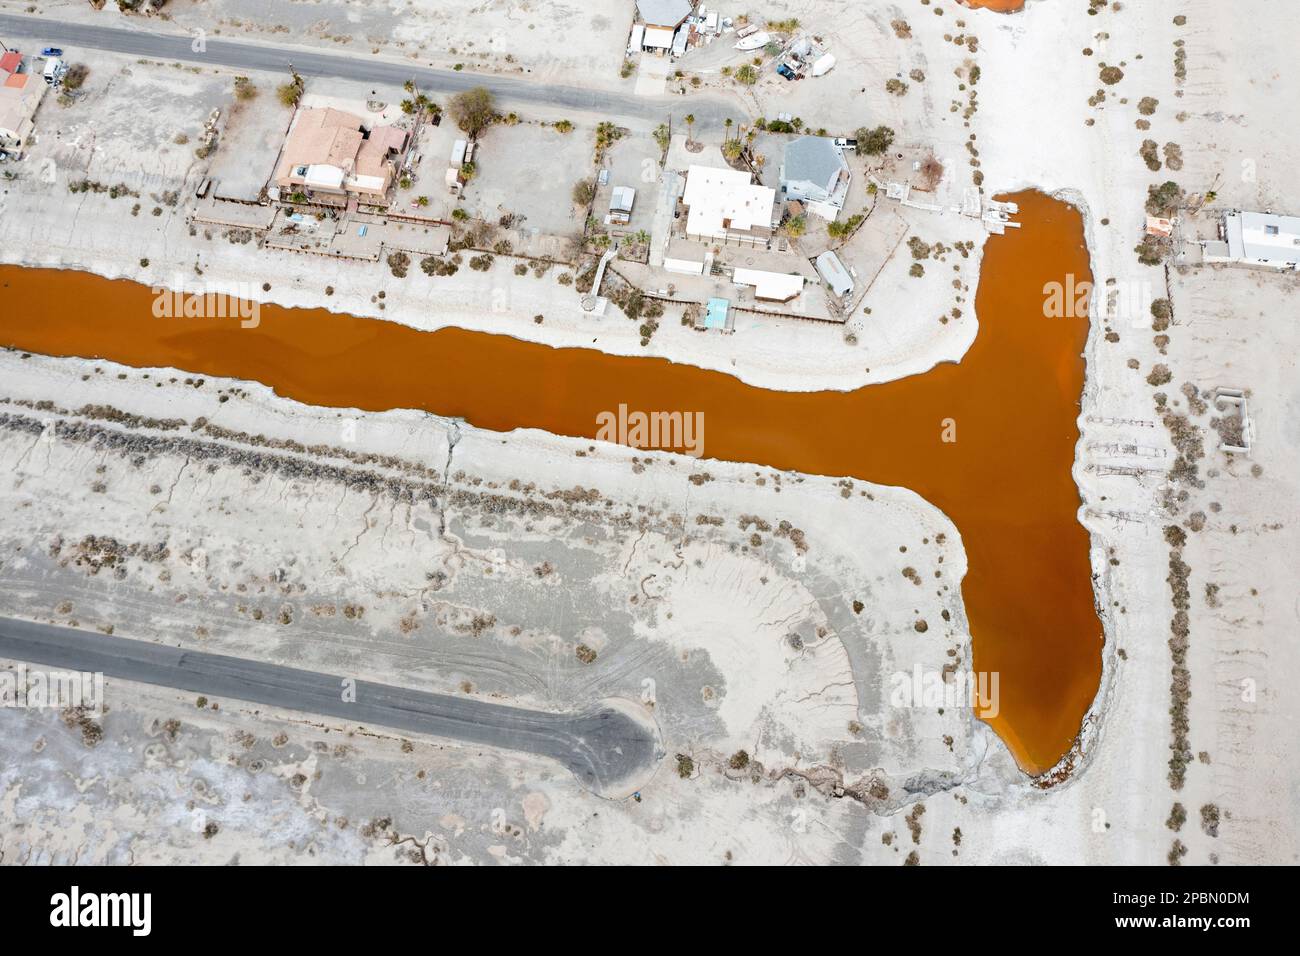 La mer de Salton est l'un des problèmes environnementaux les plus épineux de l'Occident américain. Le lac se rétrécit en raison de la sécheresse persistante, des transferts d'eau vers les villes voisines et de la diminution des entrées de ruissellement agricole alimentées par le fleuve Colorado. À Desert Shores, une communauté située sur le bord ouest de la mer de Salton, le rivage en recul a coupé le port de plaisance de la ville du reste du lac. Les polluants et les microbes salants ont transformé l'eau stagnante et nauséabonde en une teinte rougeâtre éclatante. Banque D'Images